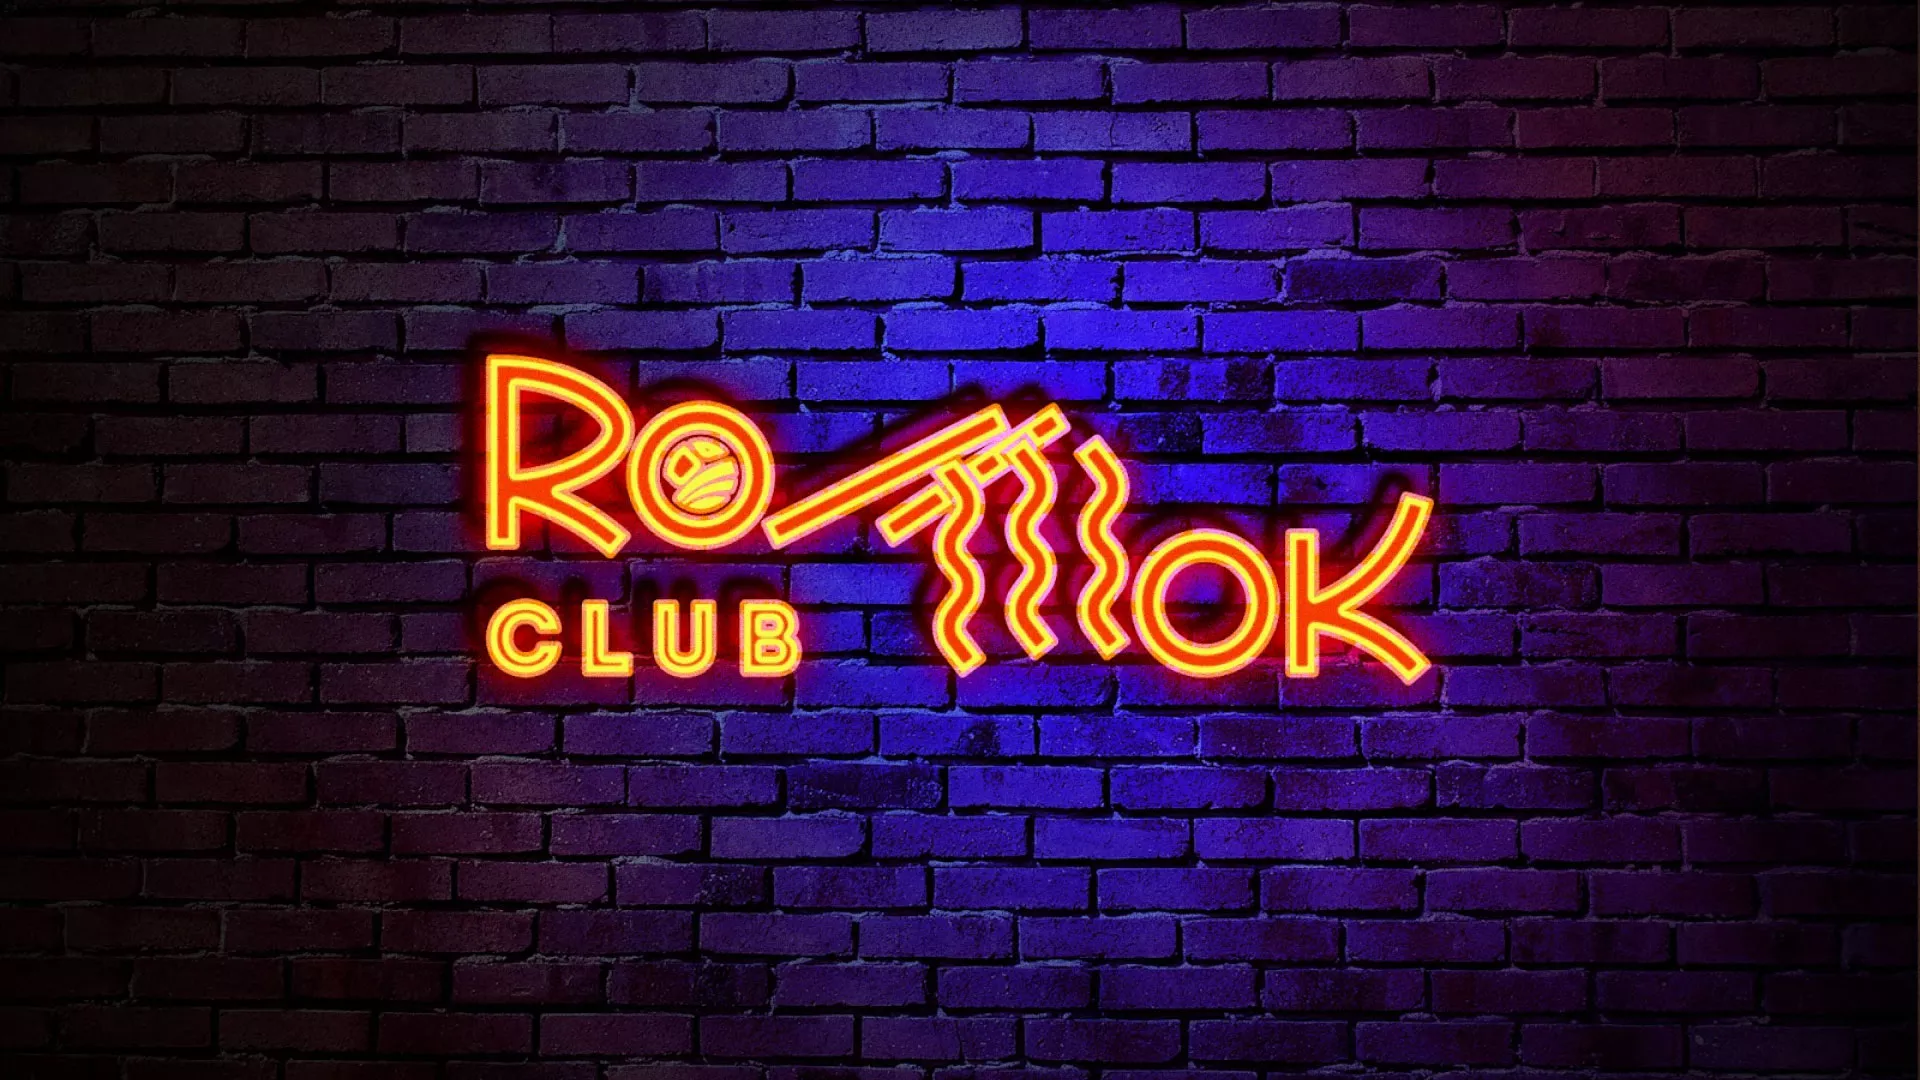 Разработка интерьерной вывески суши-бара «Roll Wok Club» в Болотном